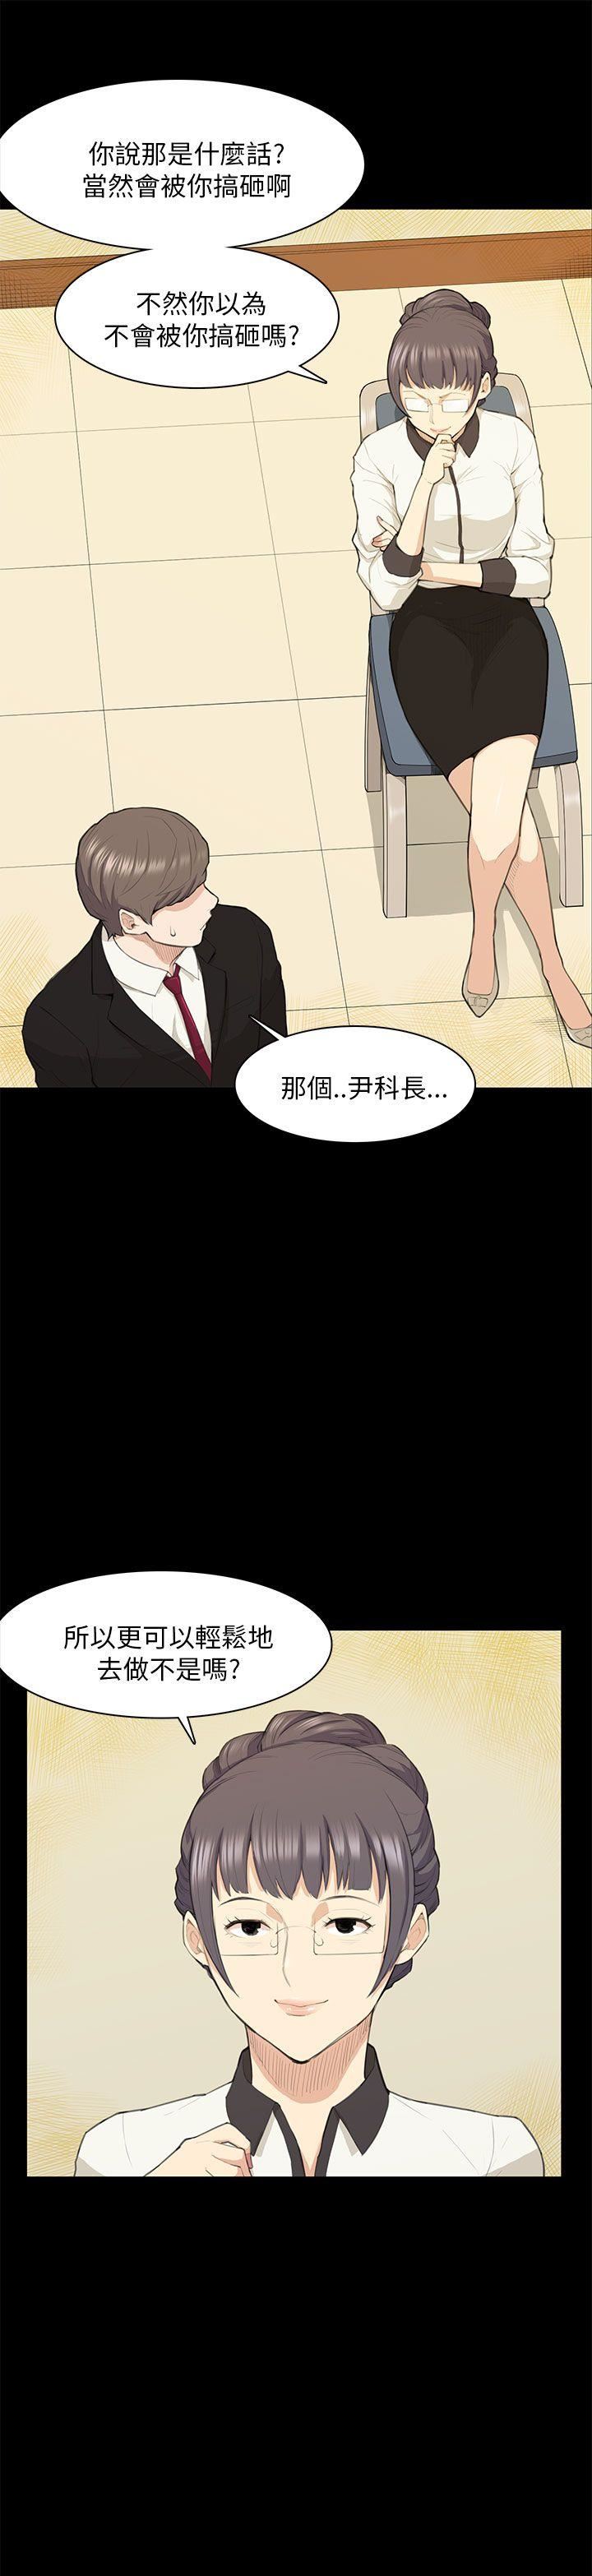 韩国污漫画 斯德哥爾摩癥候群 第15话 16